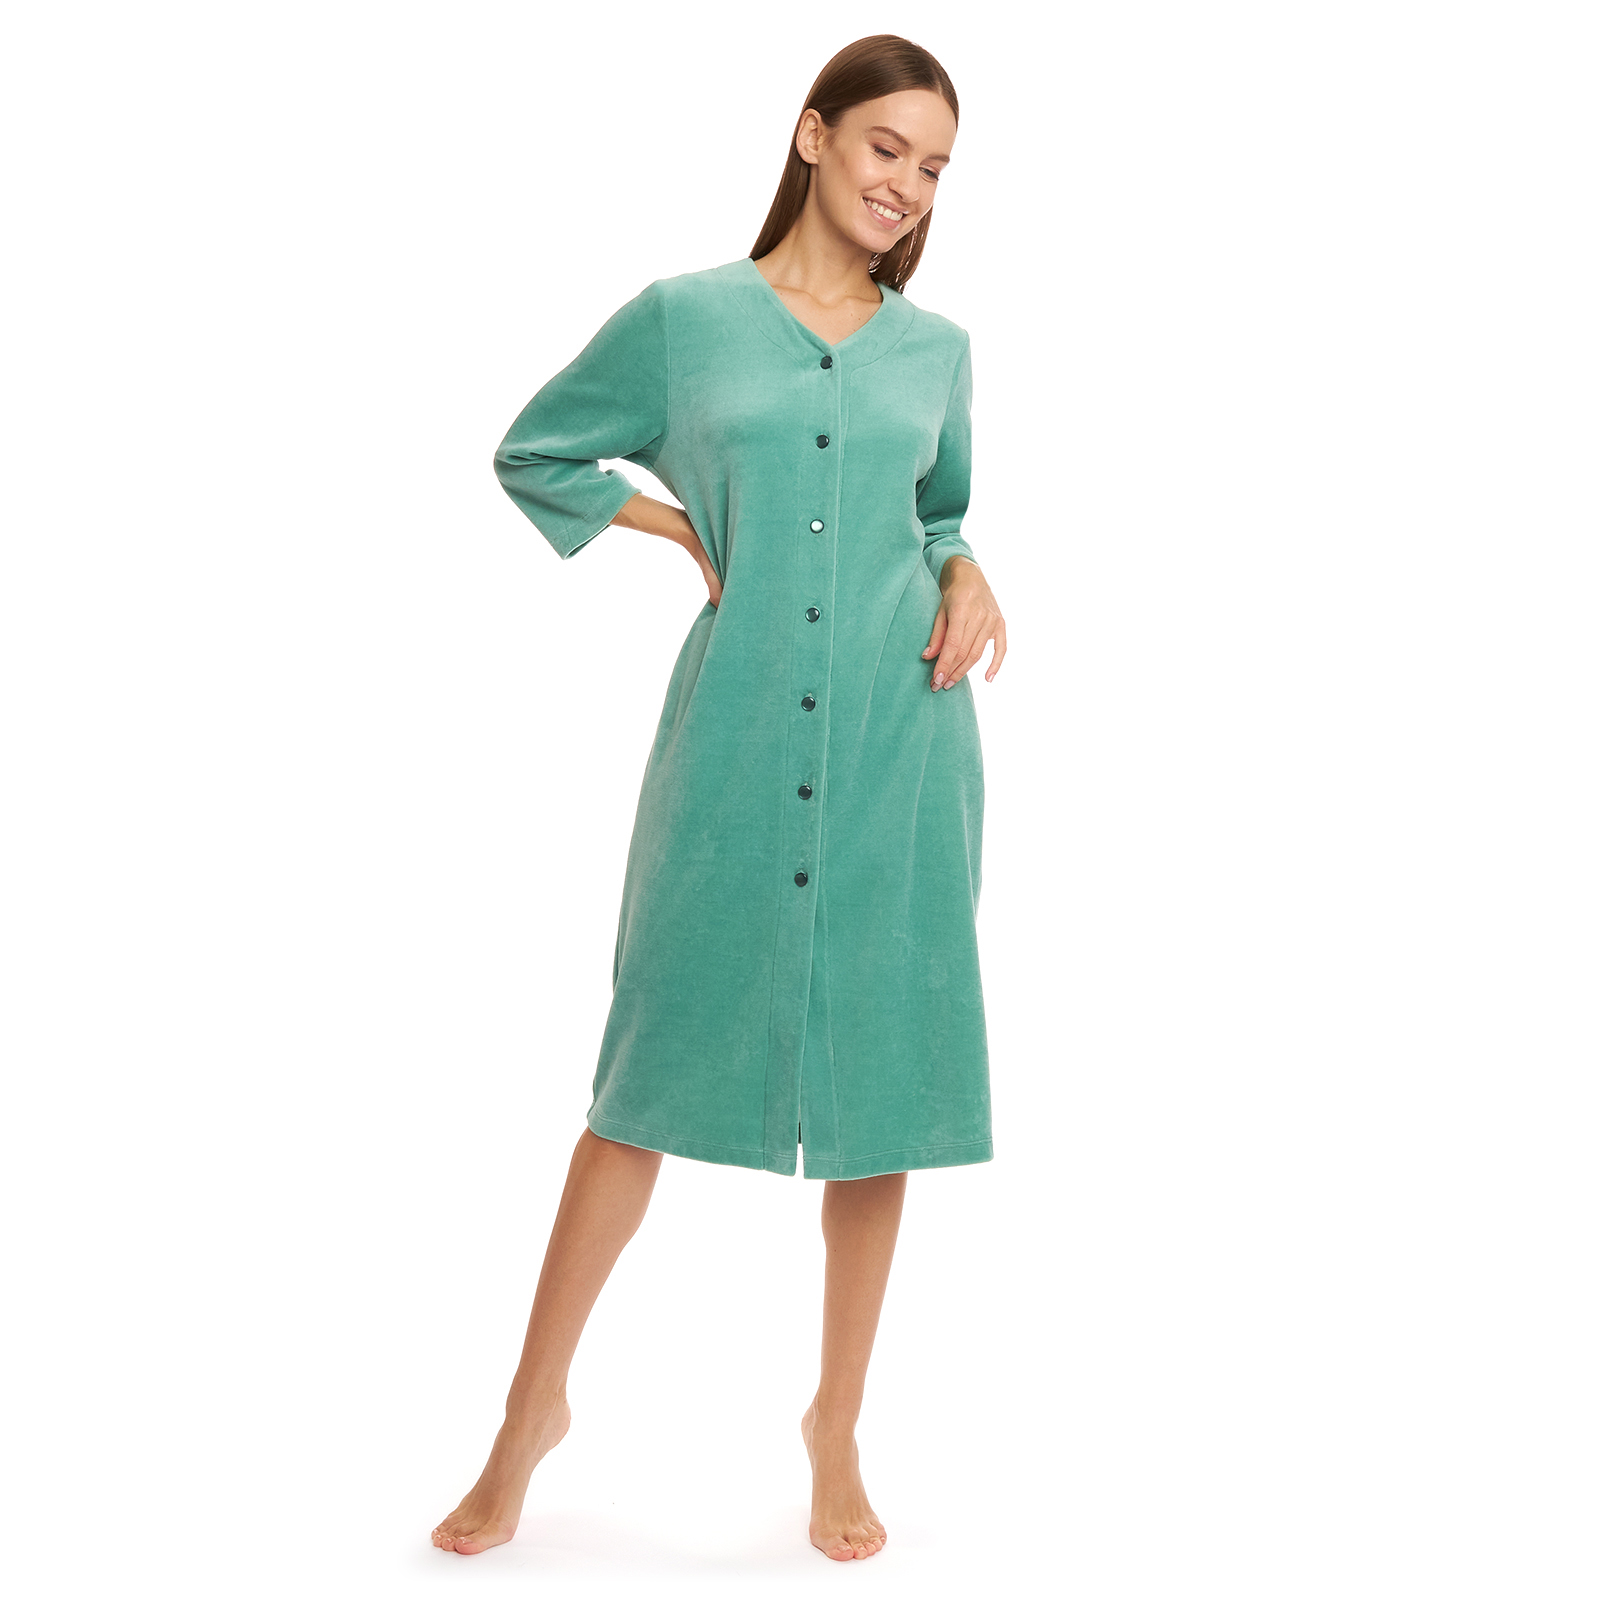 Халат Fashion жен халат бриз зеленый р 52